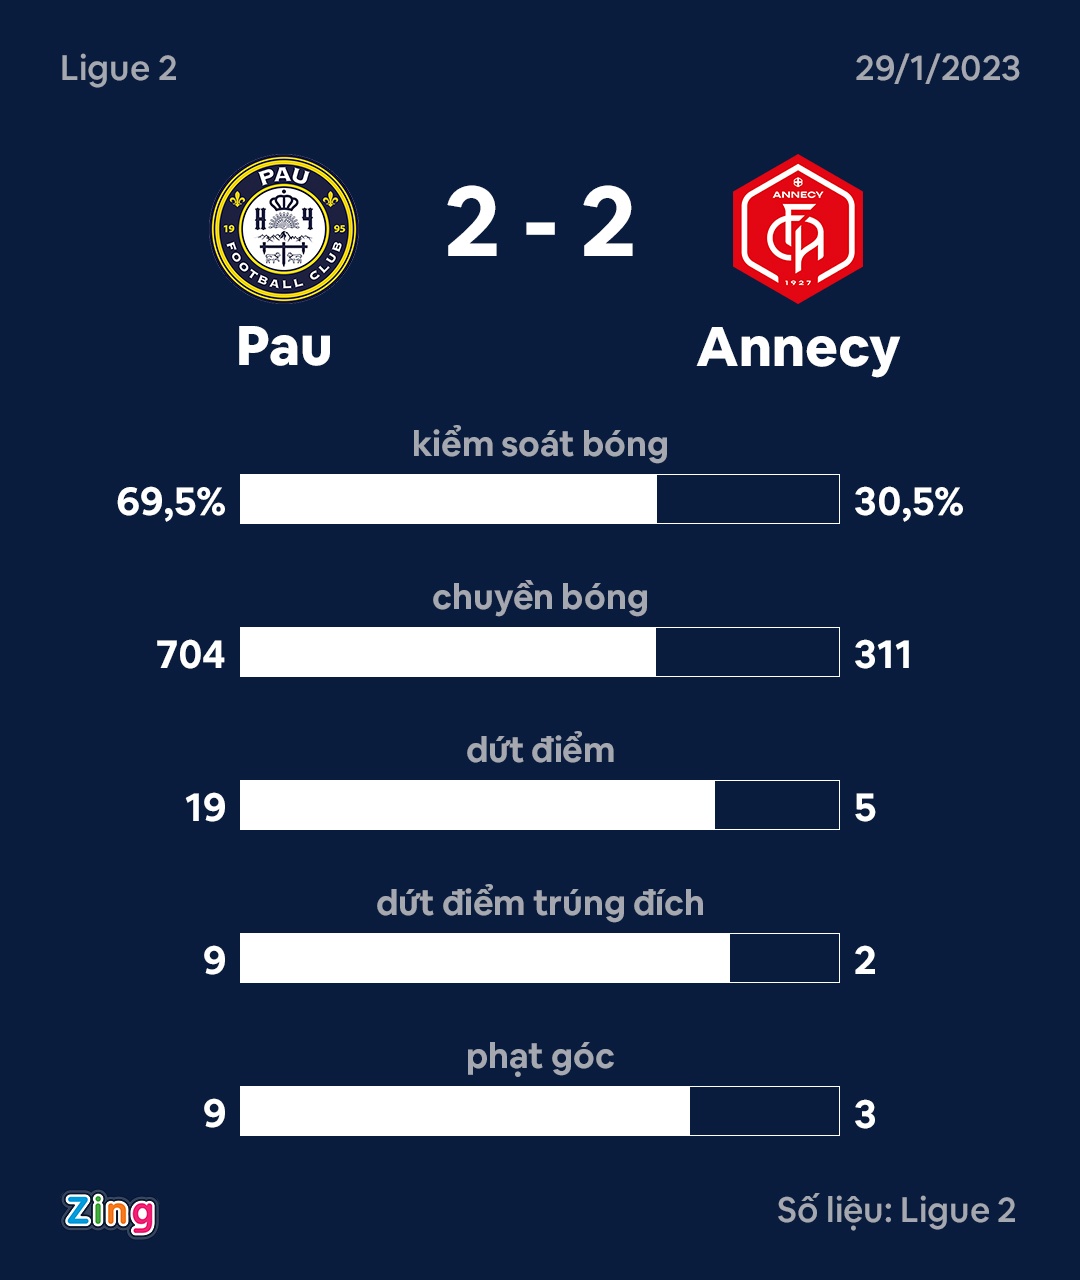 Pau thua Annecy anh 3